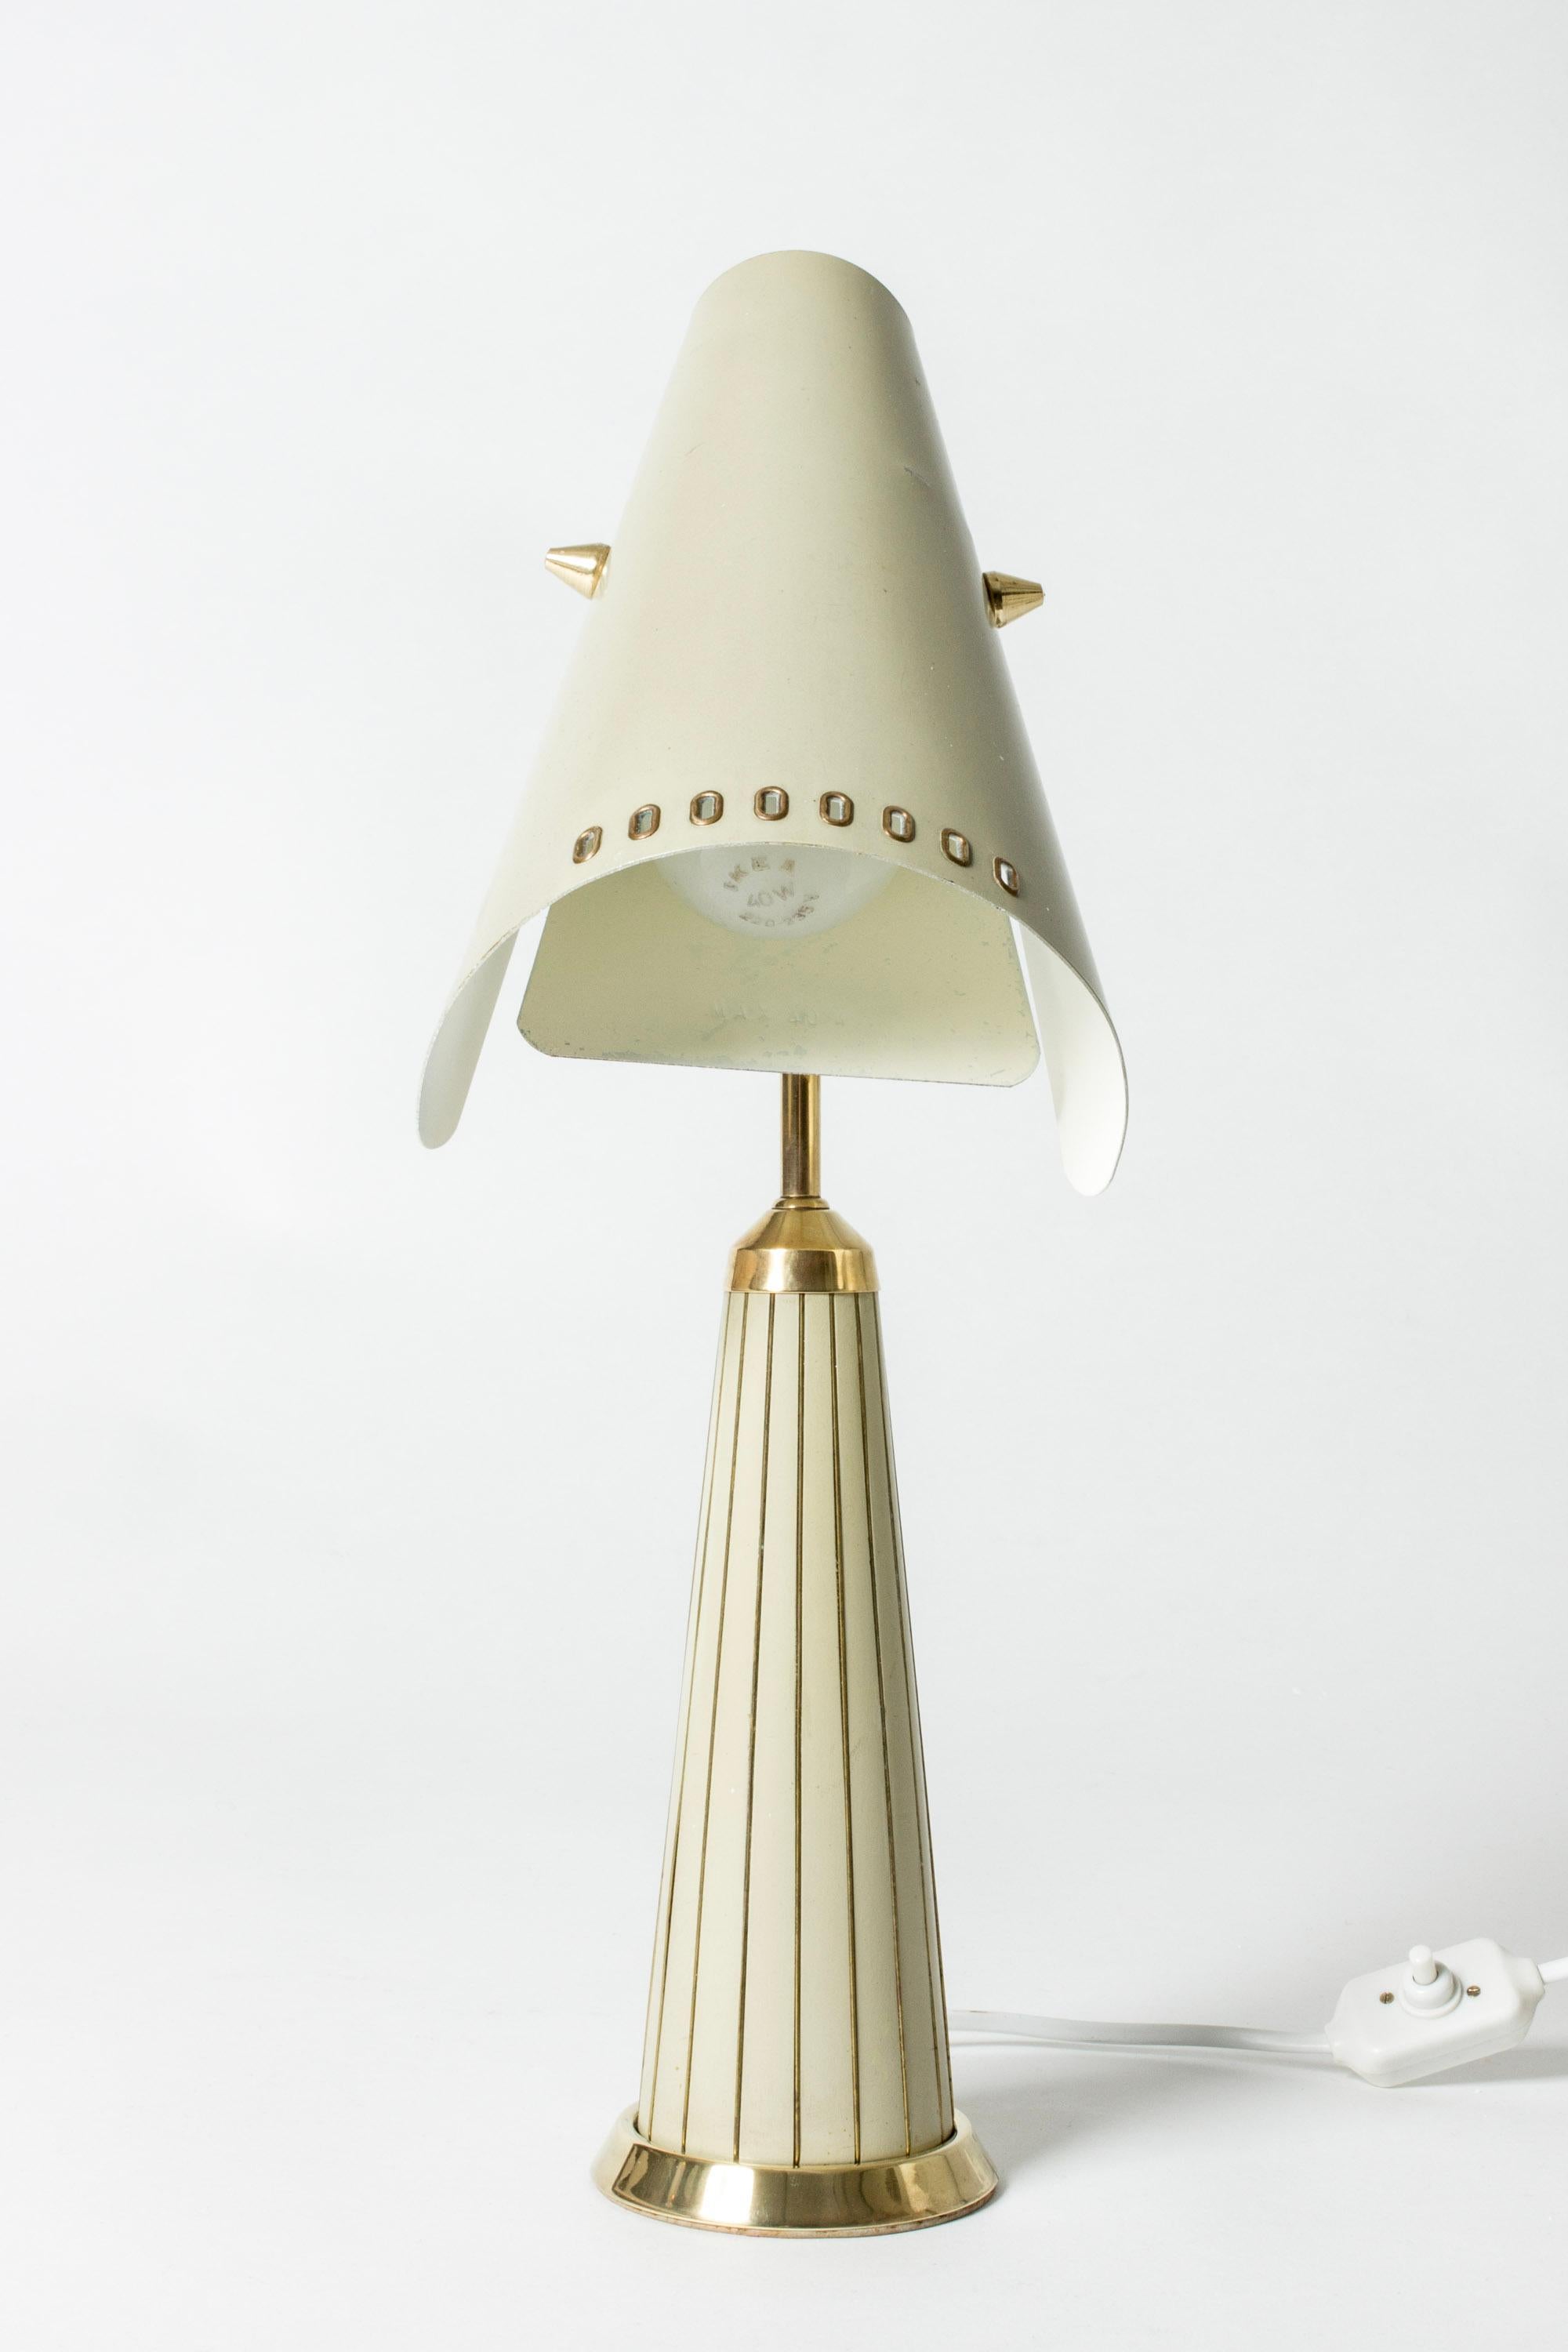 Lampe de table suédoise des années 1950 très cool de Fåglavik, une petite entreprise d'éclairage du sud de la Suède. Fåglavik a réalisé de petites séries d'éclairages avec des expressions artistiques distinctes. Fabriqué en métal laqué crème avec